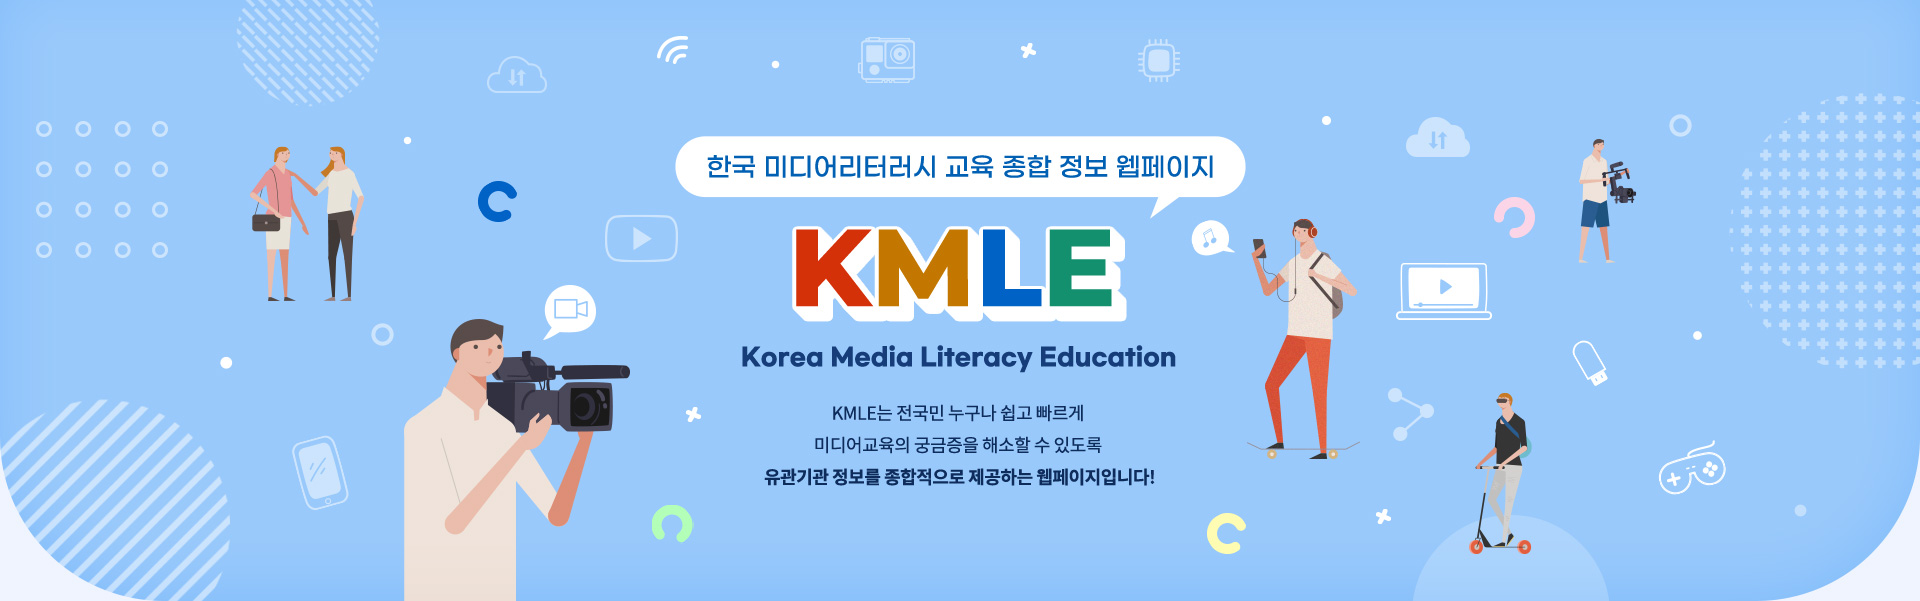 한국 미디어리터러시 교육 종합 정보 웹페이지 K M L E Korea Media Literacy Education K M L E는 전국민 누구나 쉽고 빠르게 미디어교육의 궁금증을 해소할 수 있도록 유관기관 정보를 종합적으로 제공하는 웹페이지입니다!